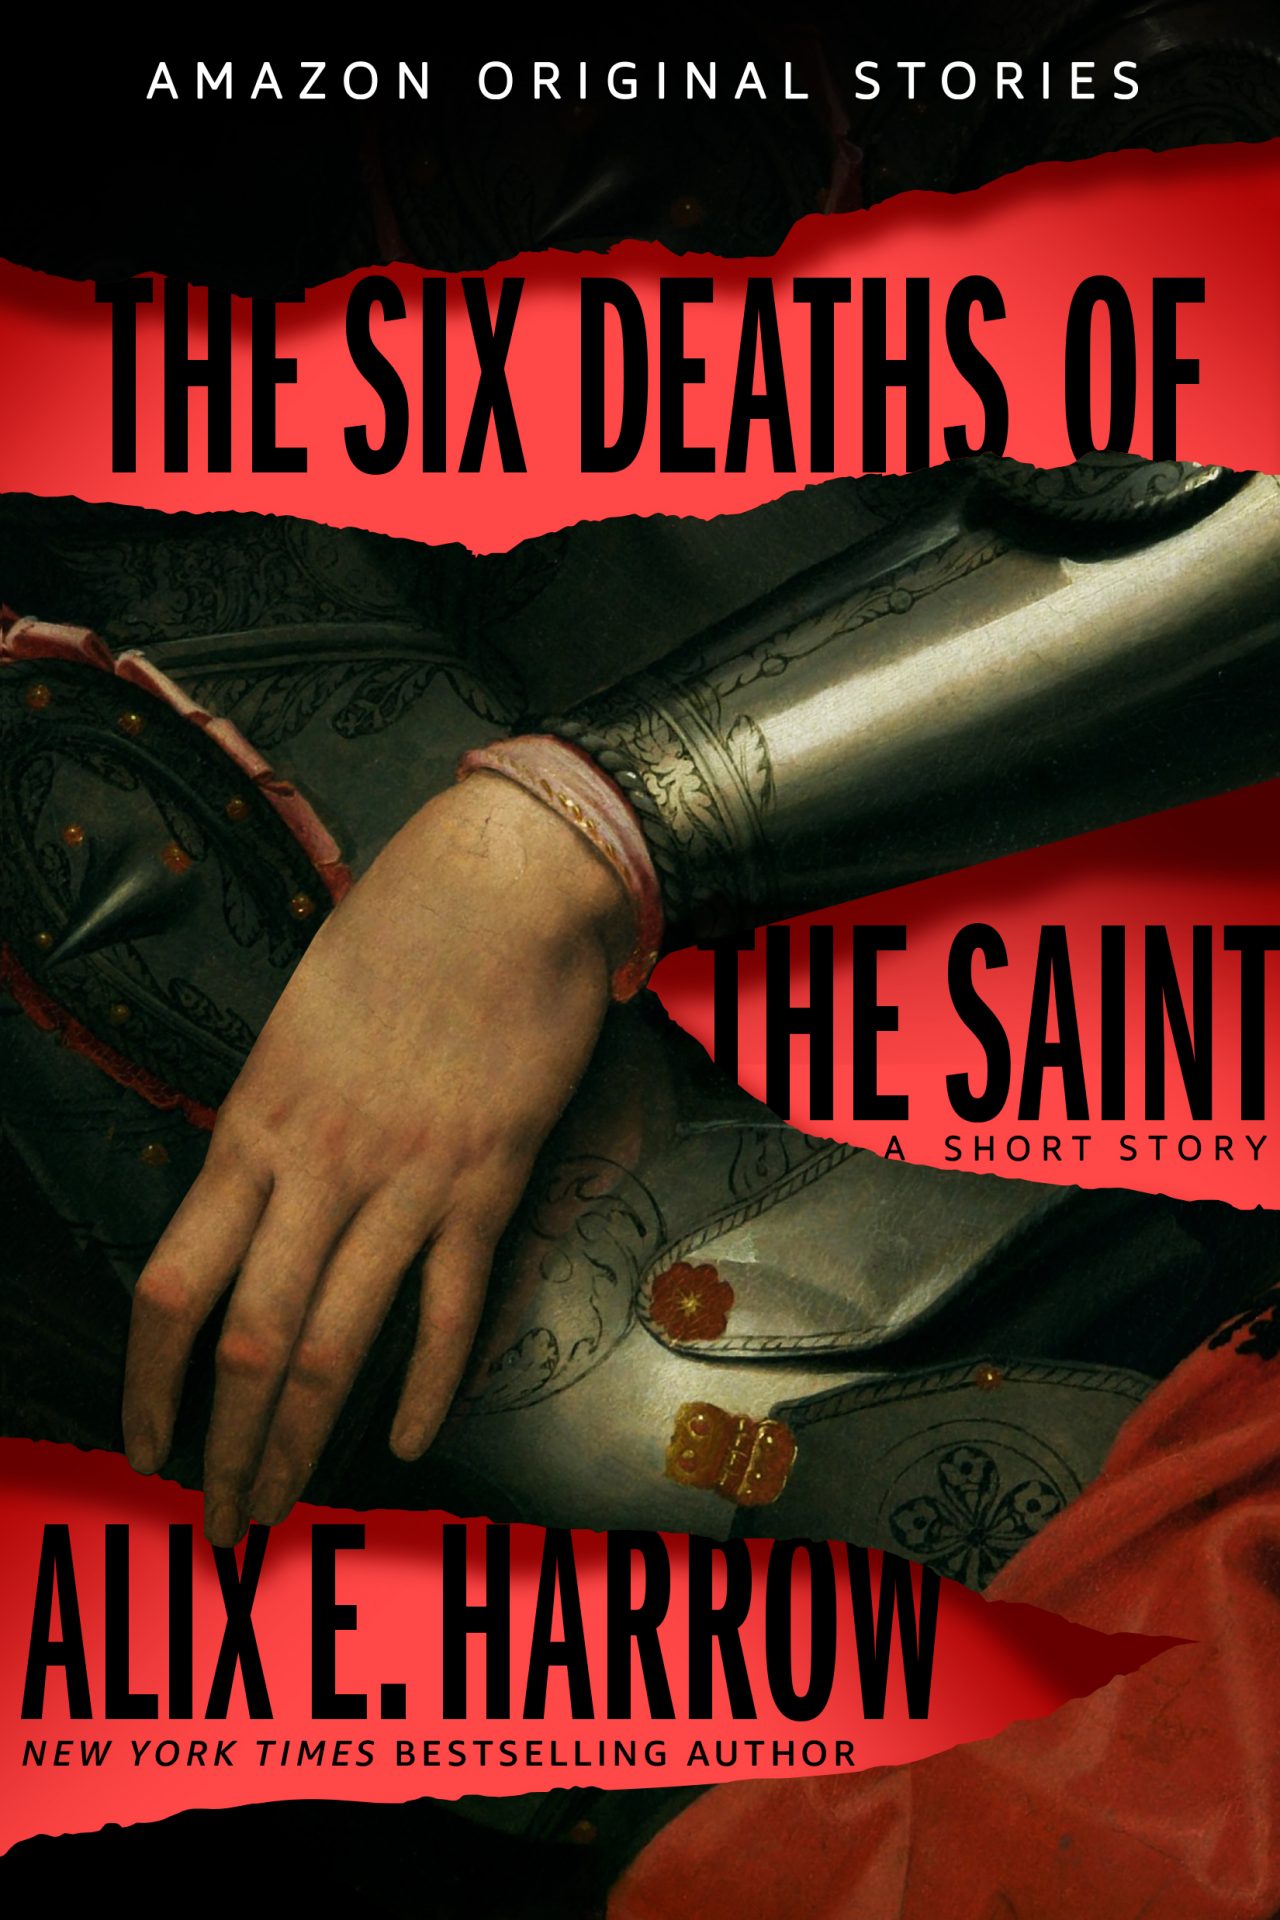 Alix E. Harrow: The Six Deaths of the Saint